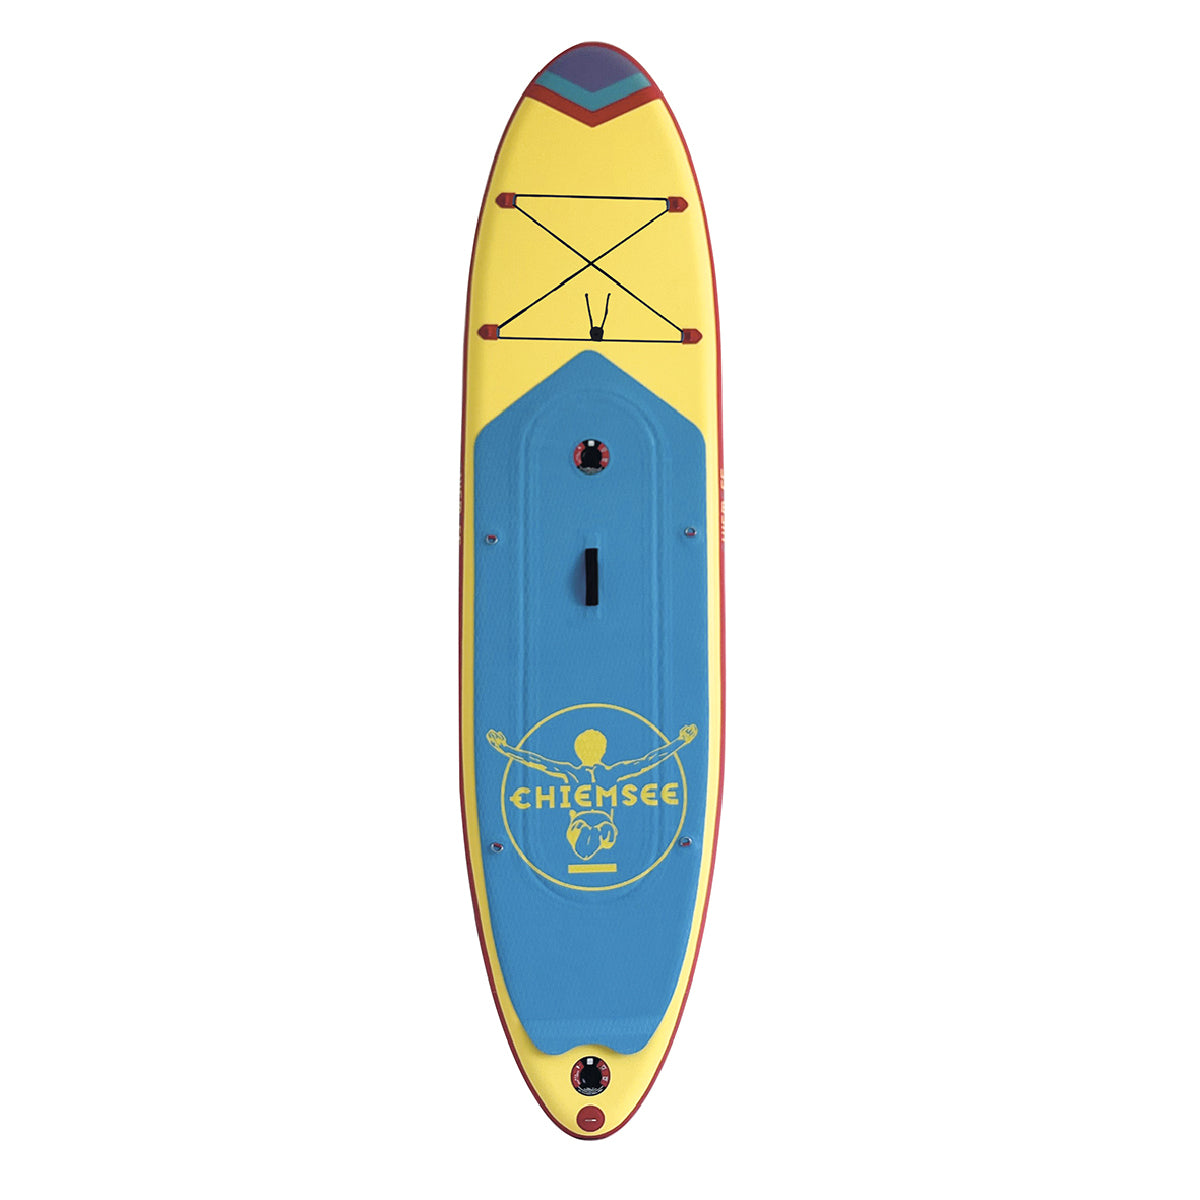 Chiemsee SUP-Set inkl. Board, Paddel, Pumpe, Leash & Rucksack (gelb/blau)